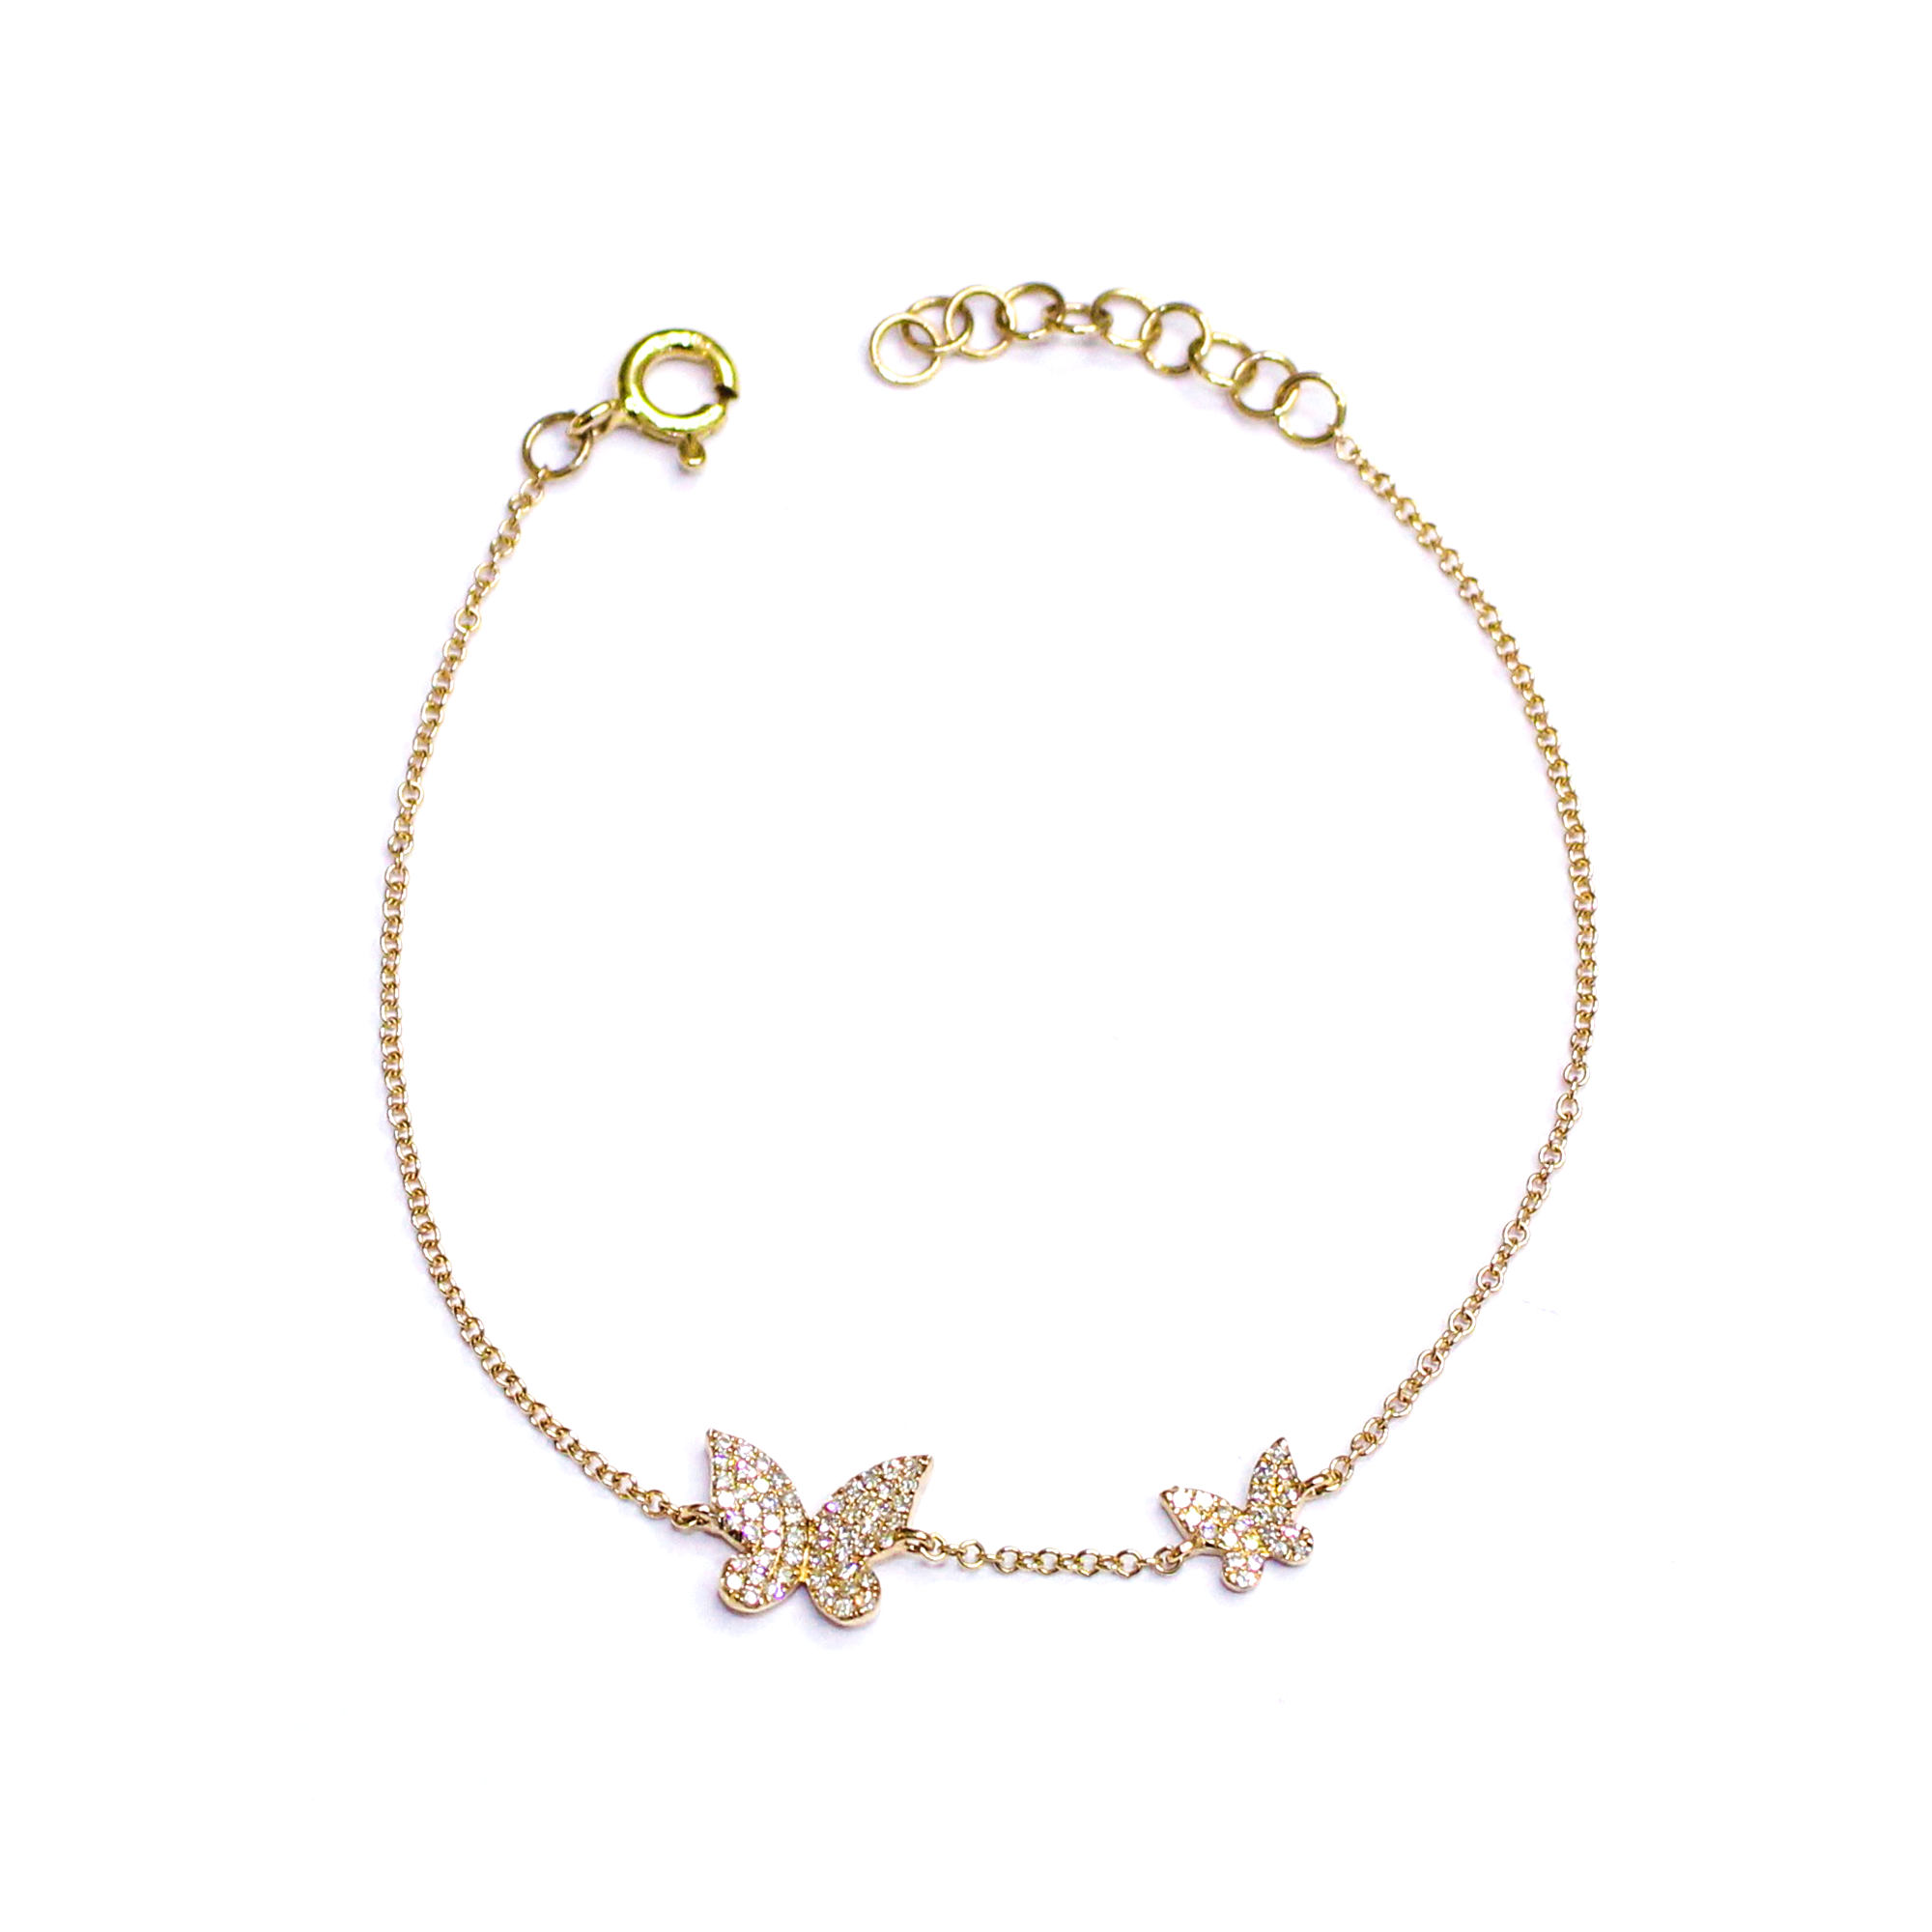 Two Diamond Butterfly Chain Bracelet